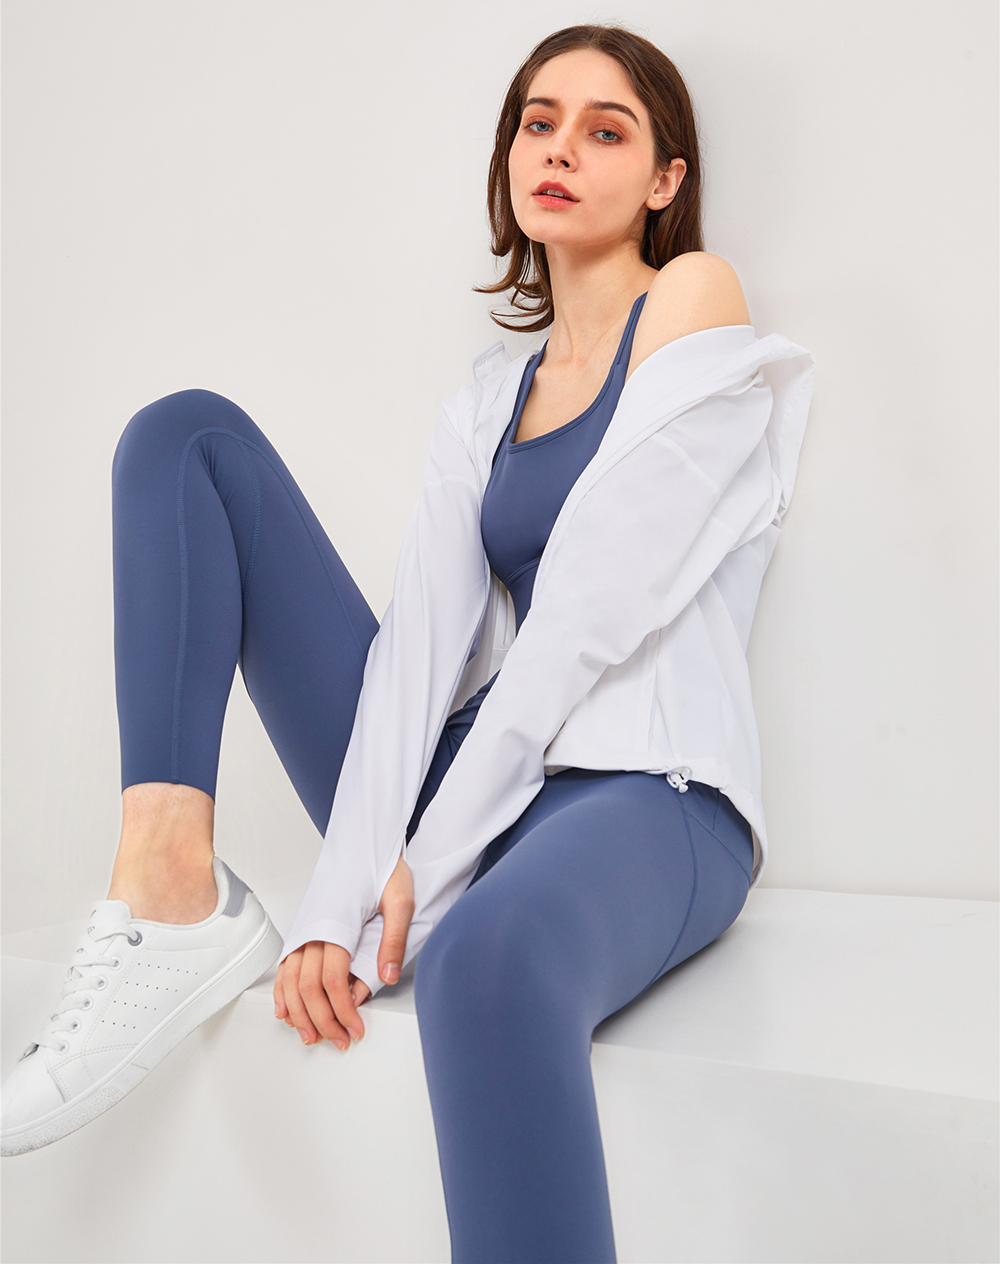 Hergymclothing zip up exercise jacket white and comfortable yoga leggings blue